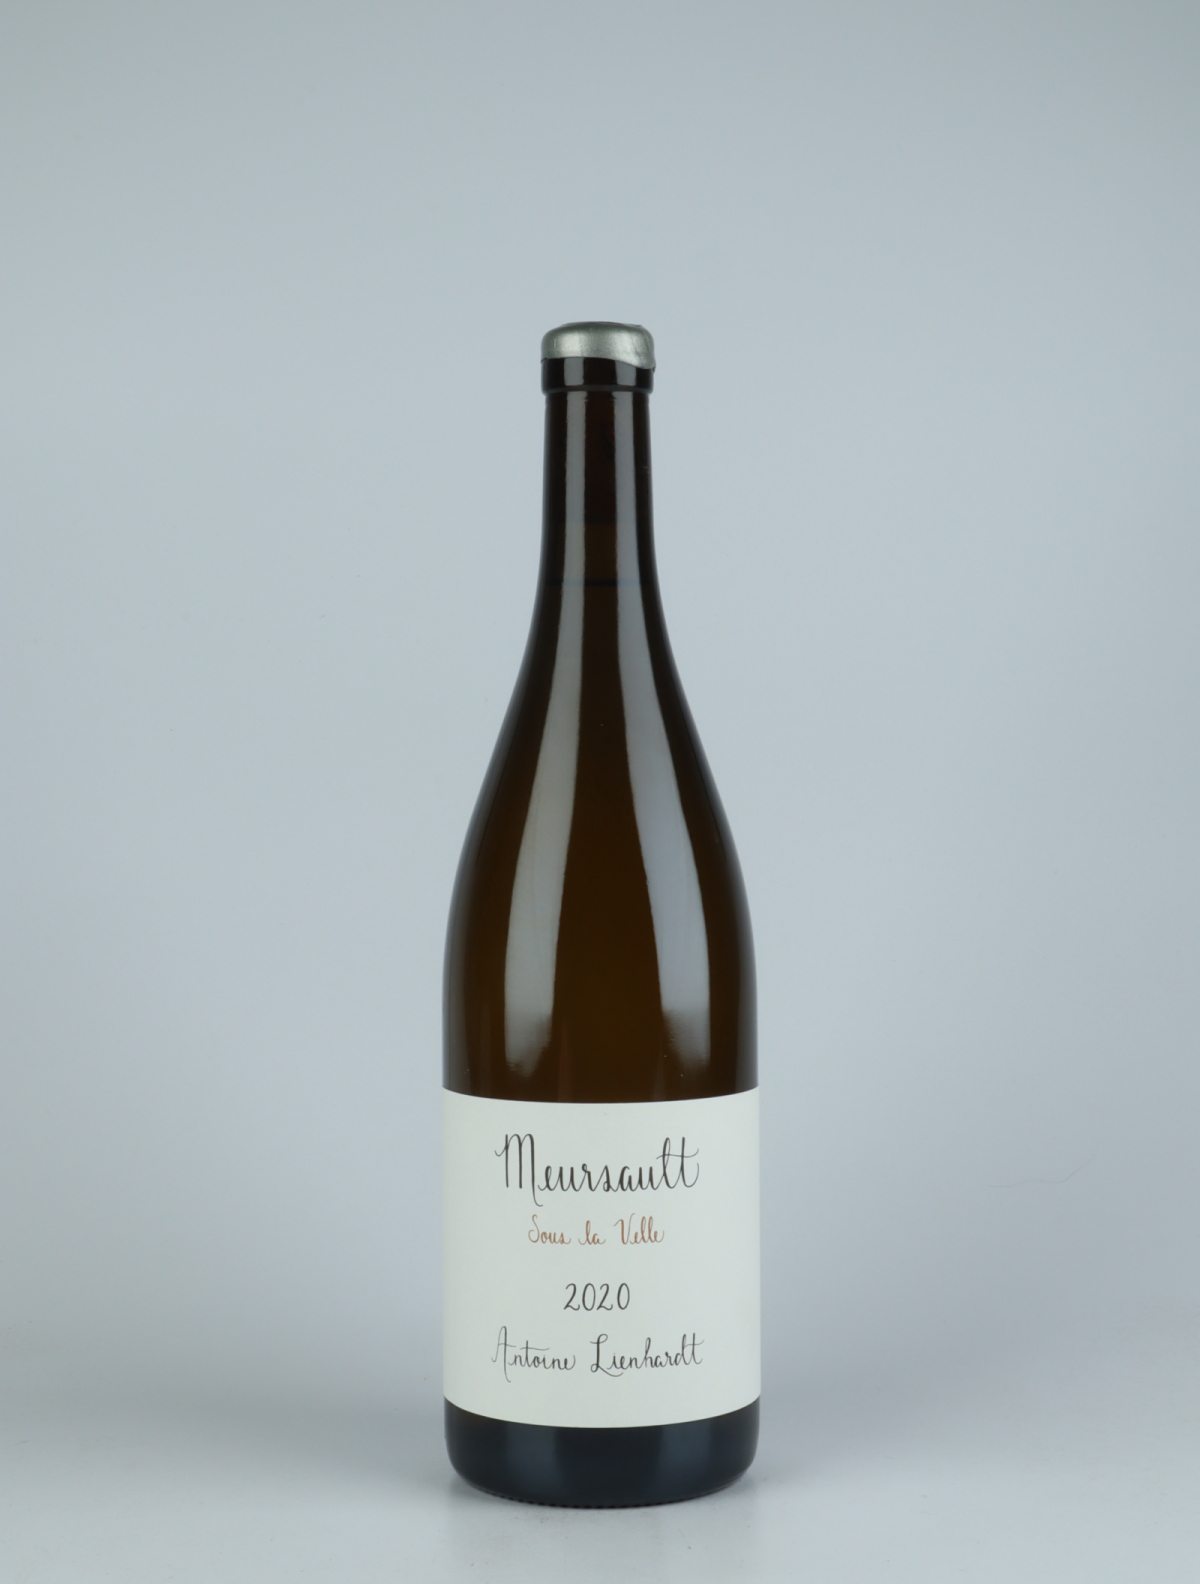 A bottle 2020 Meursault - Sous la Velle White wine from Antoine Lienhardt, Burgundy in France